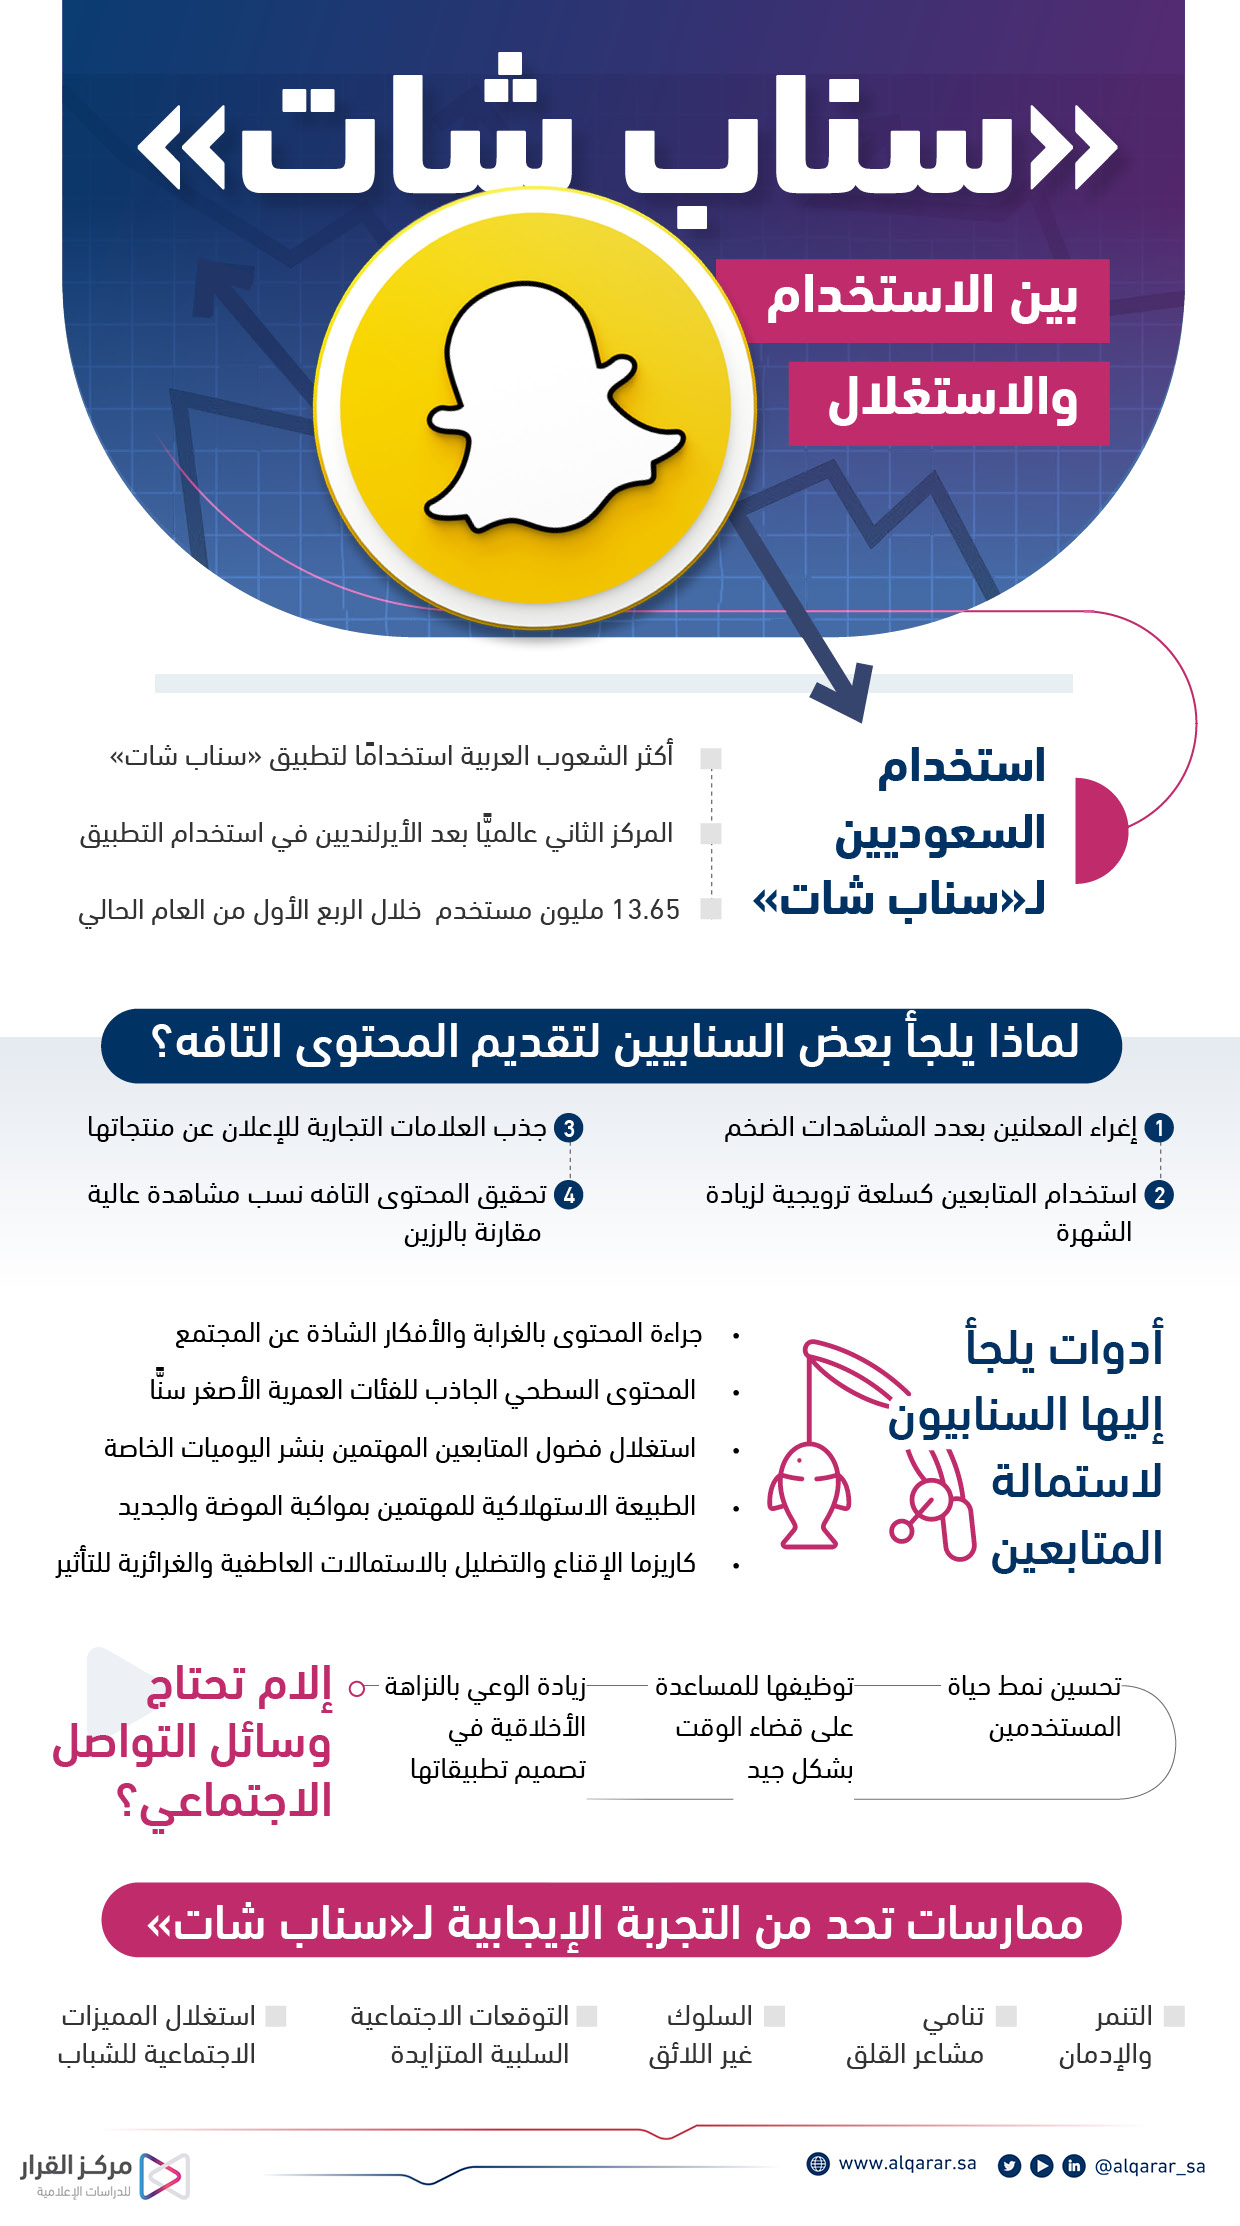 أهم وأشهر تطبيقات الحب التي يفضلها الشباب في الخليج - سناب شات: ميزات الخصوصية والأمان